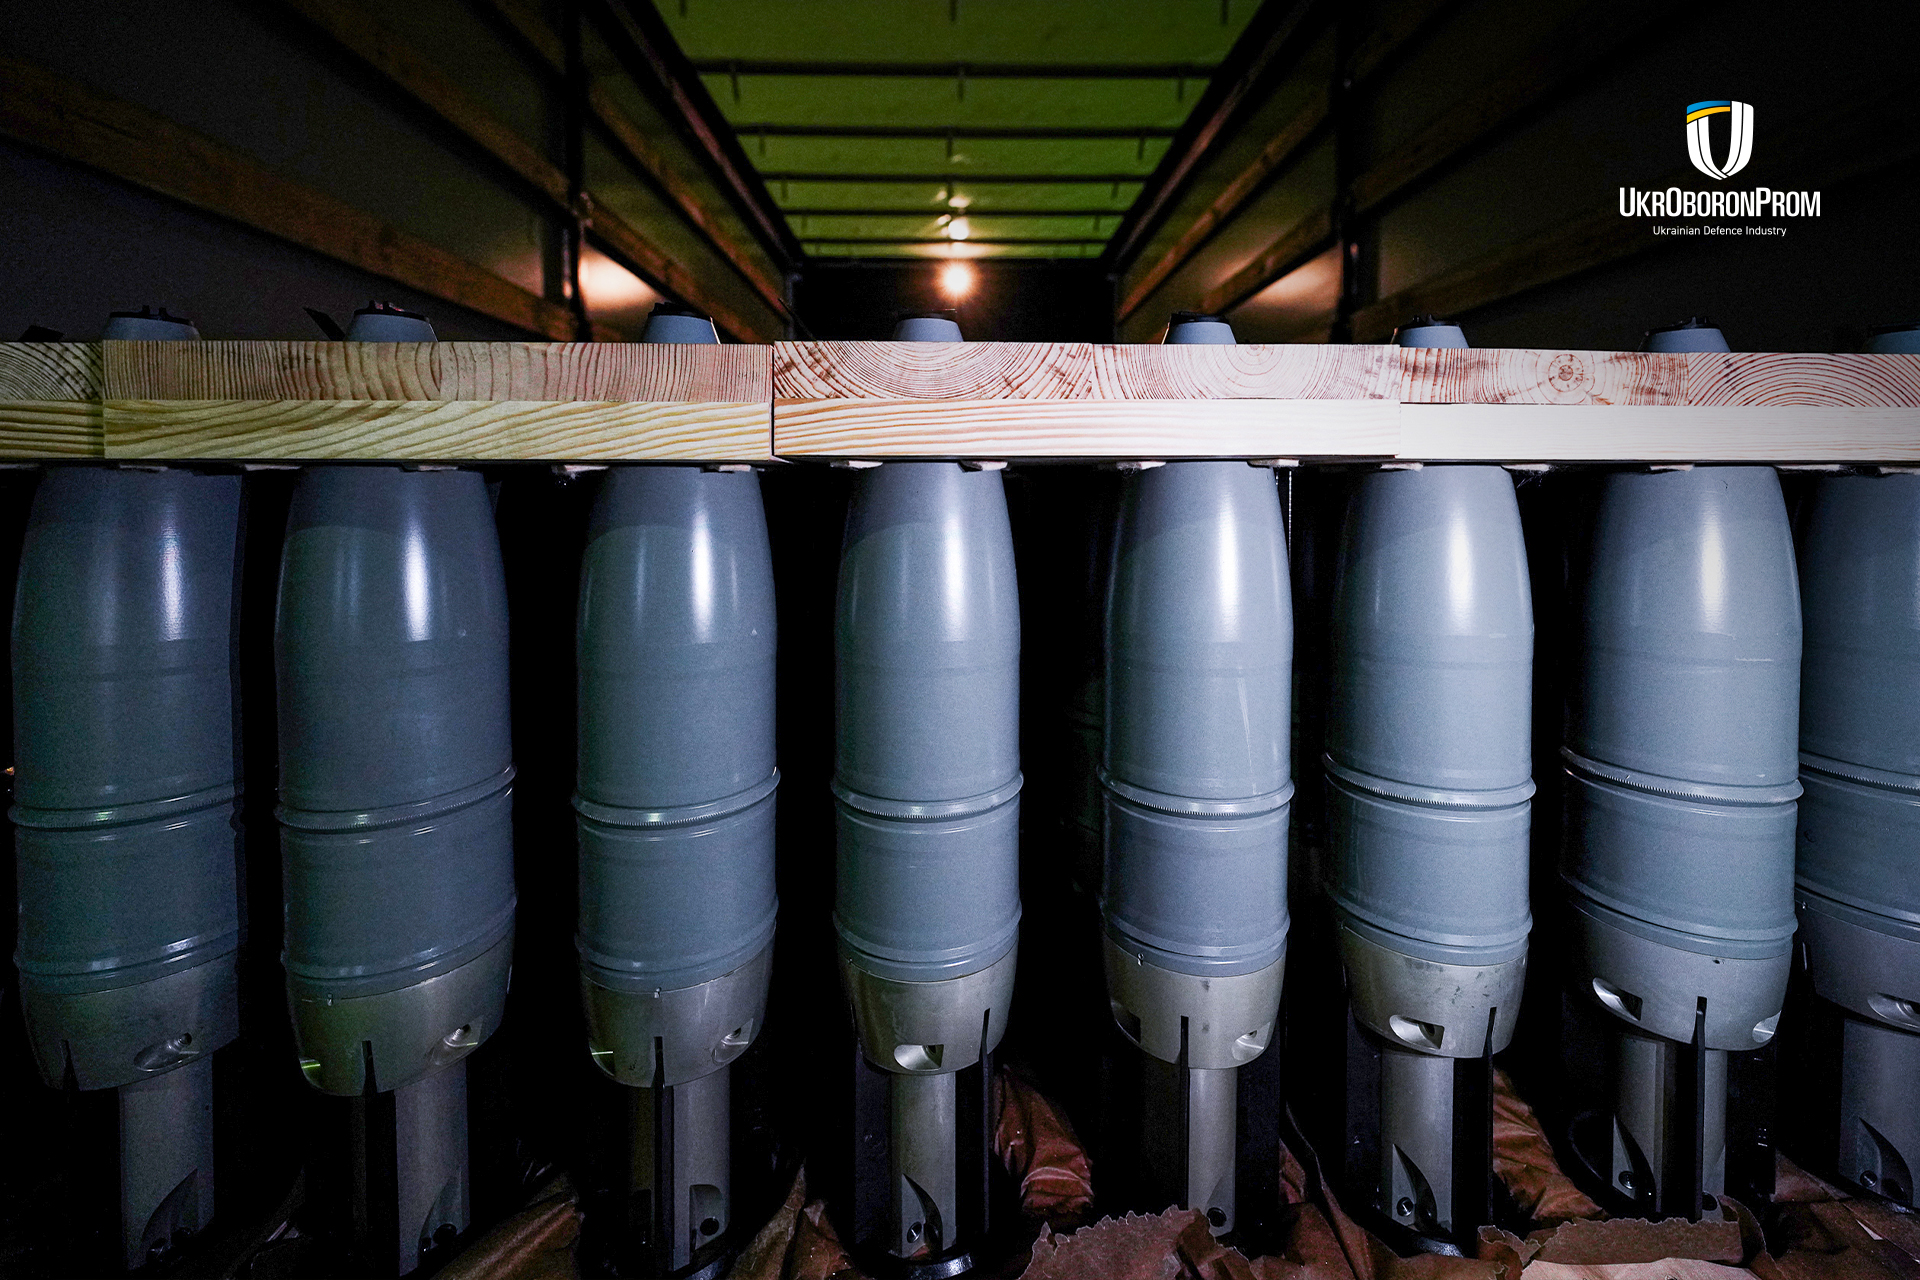 Чергову партію 125-міліметрових танкових снарядів від Укроборонпрому відвантажено для ЗСУ